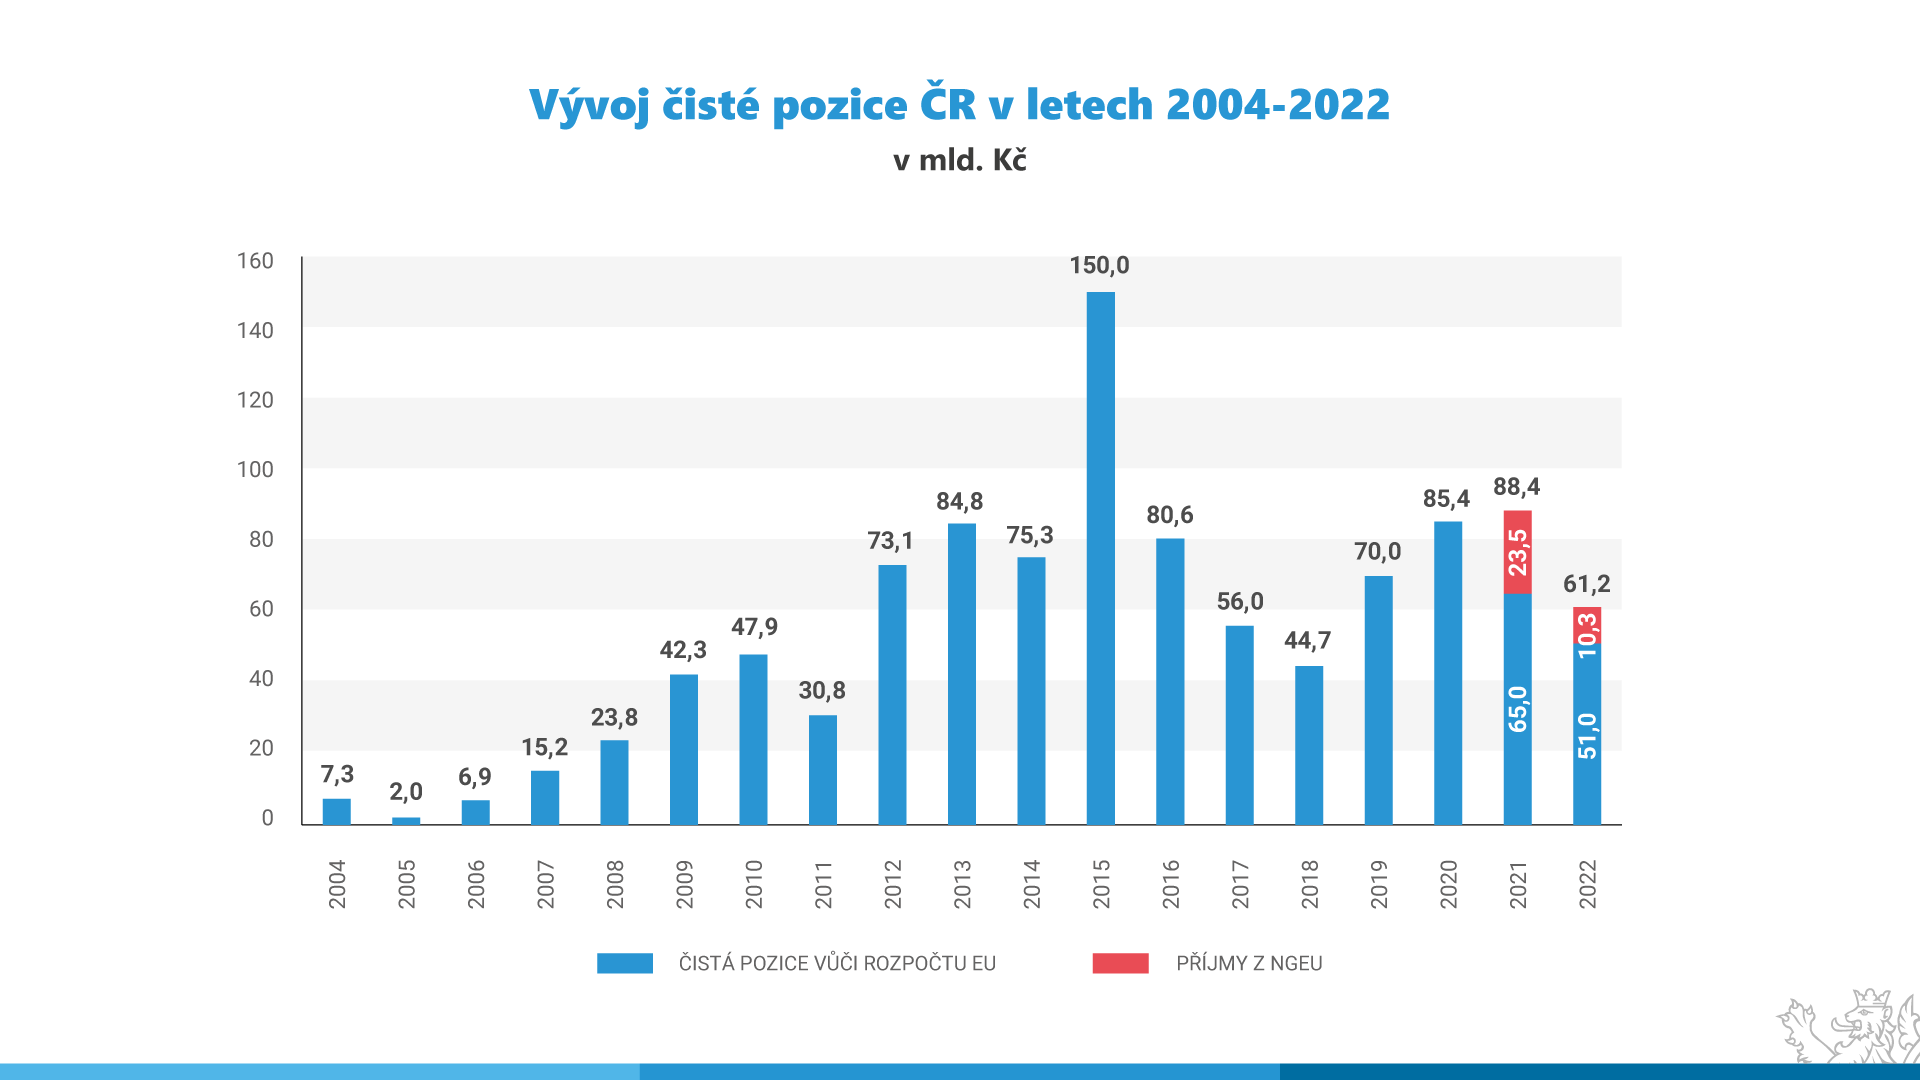 Vývoj čisté pozice ČR v letech 2004-2022